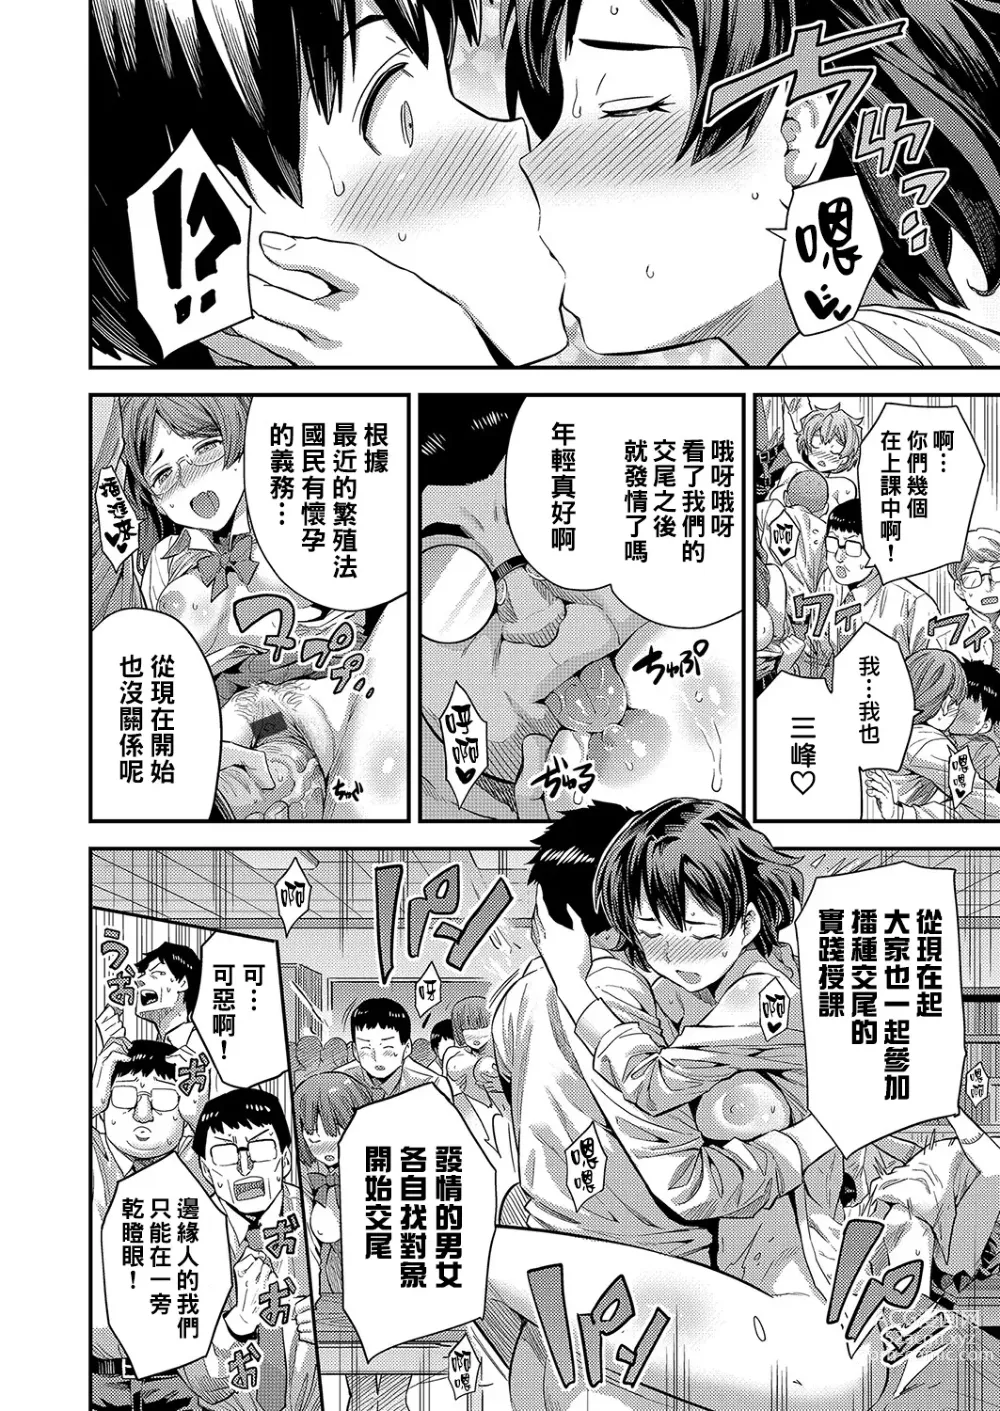 Page 21 of manga Oshiete! Tanetsuke Sensei ~Karada de Oshieru Aka-chan no Tsukurikata~